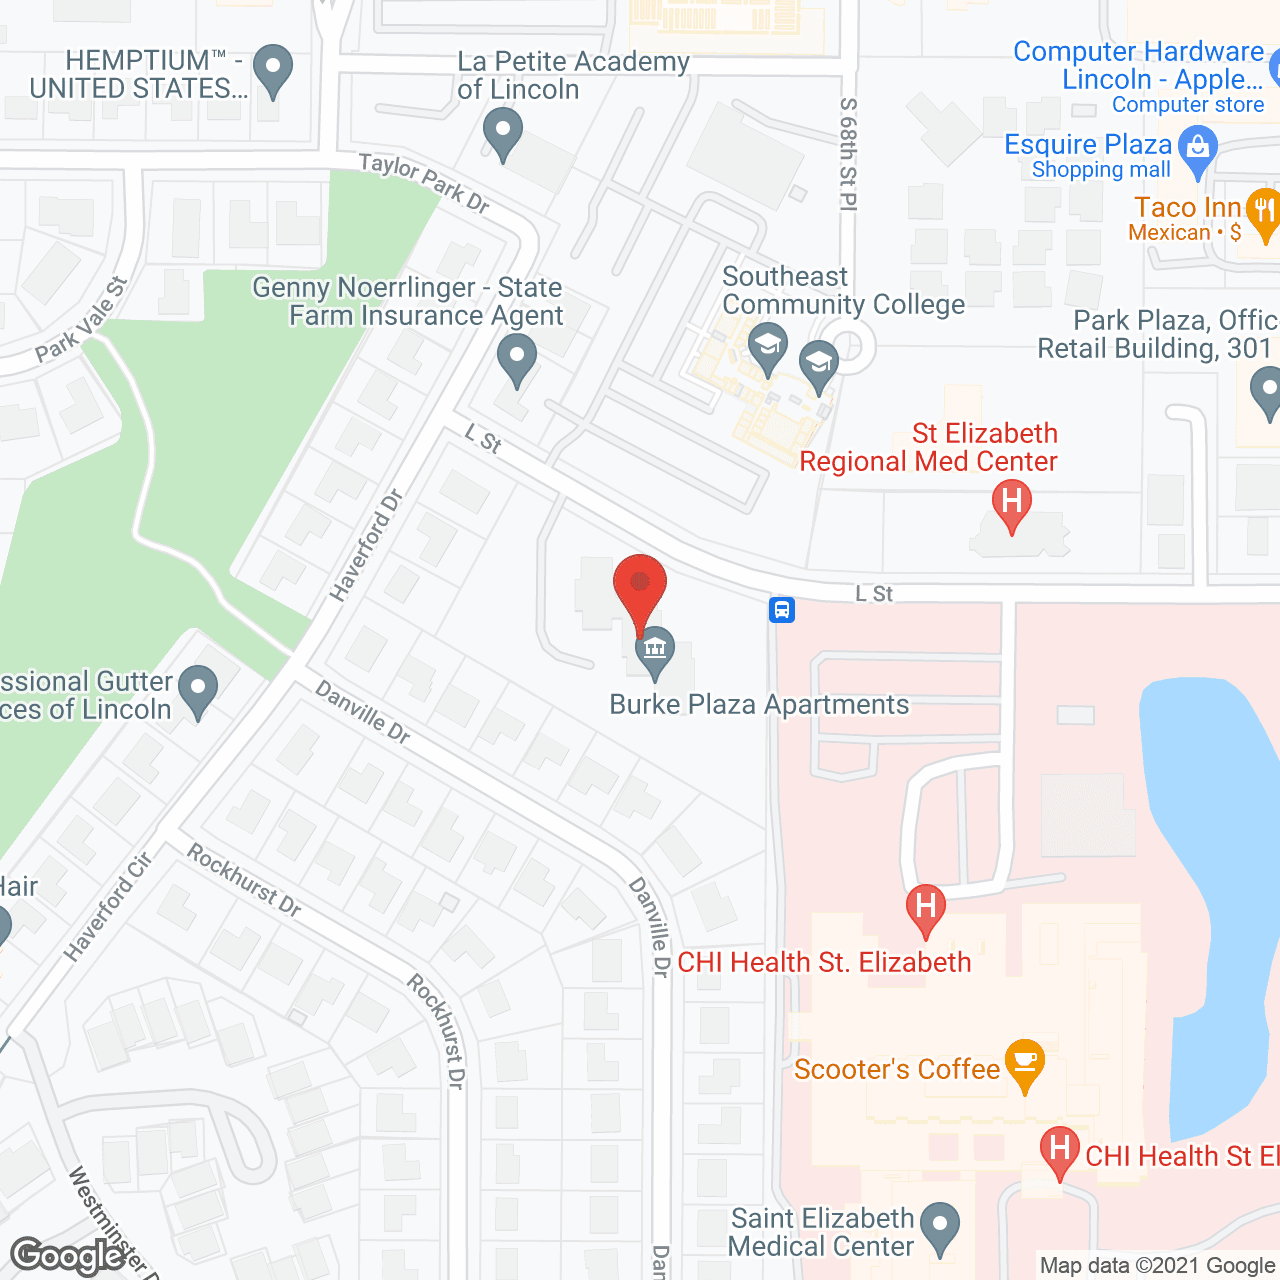 Burke Plaza in google map